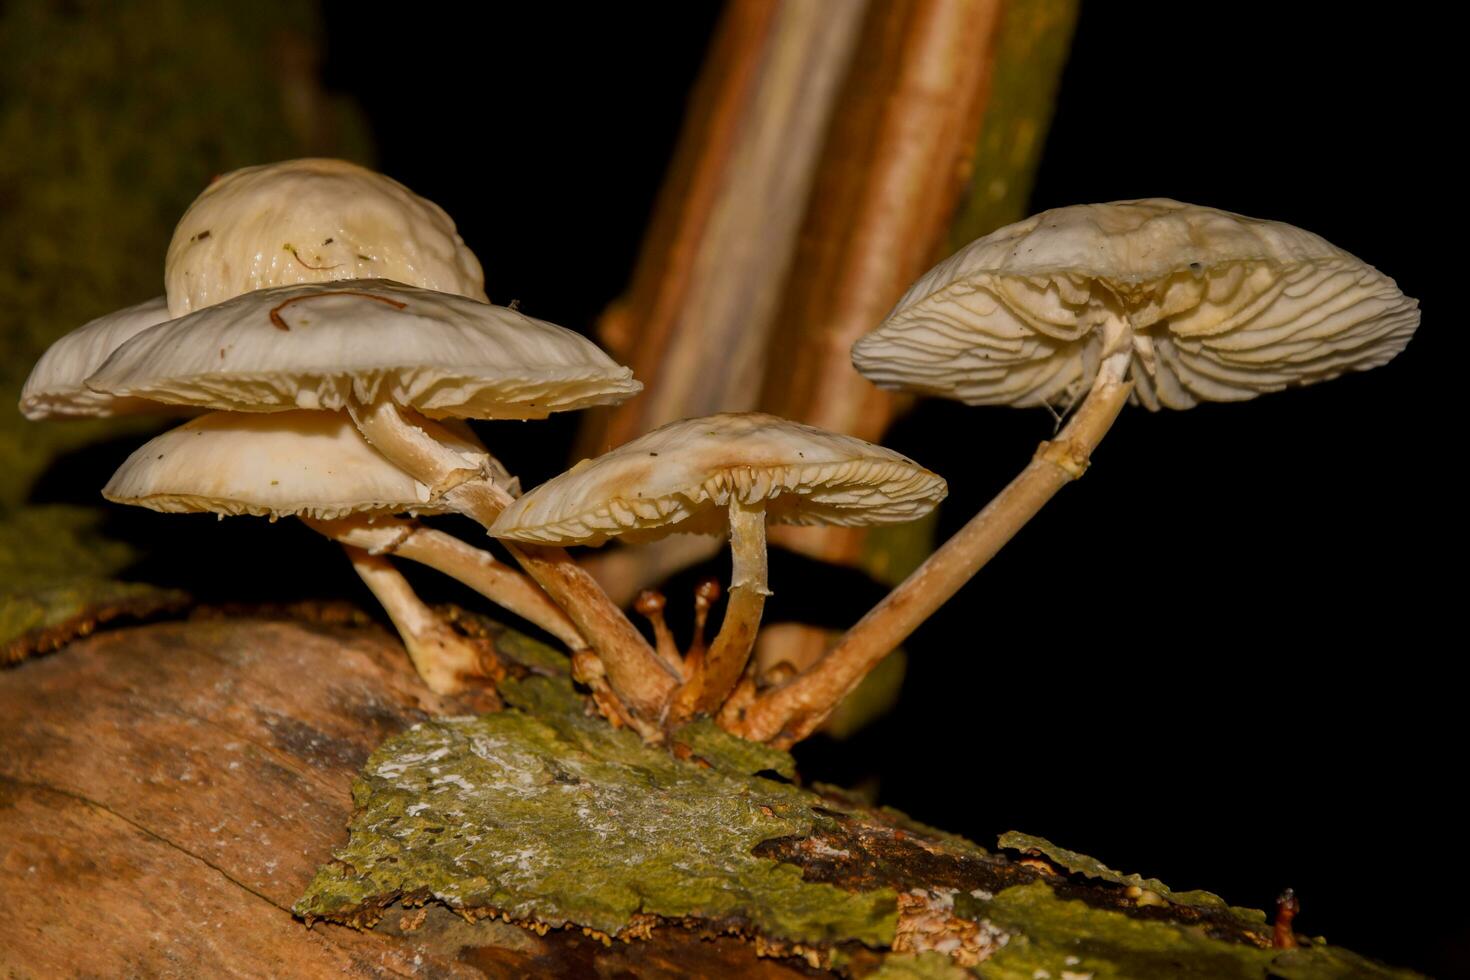 Group of mushrooms on tree photo